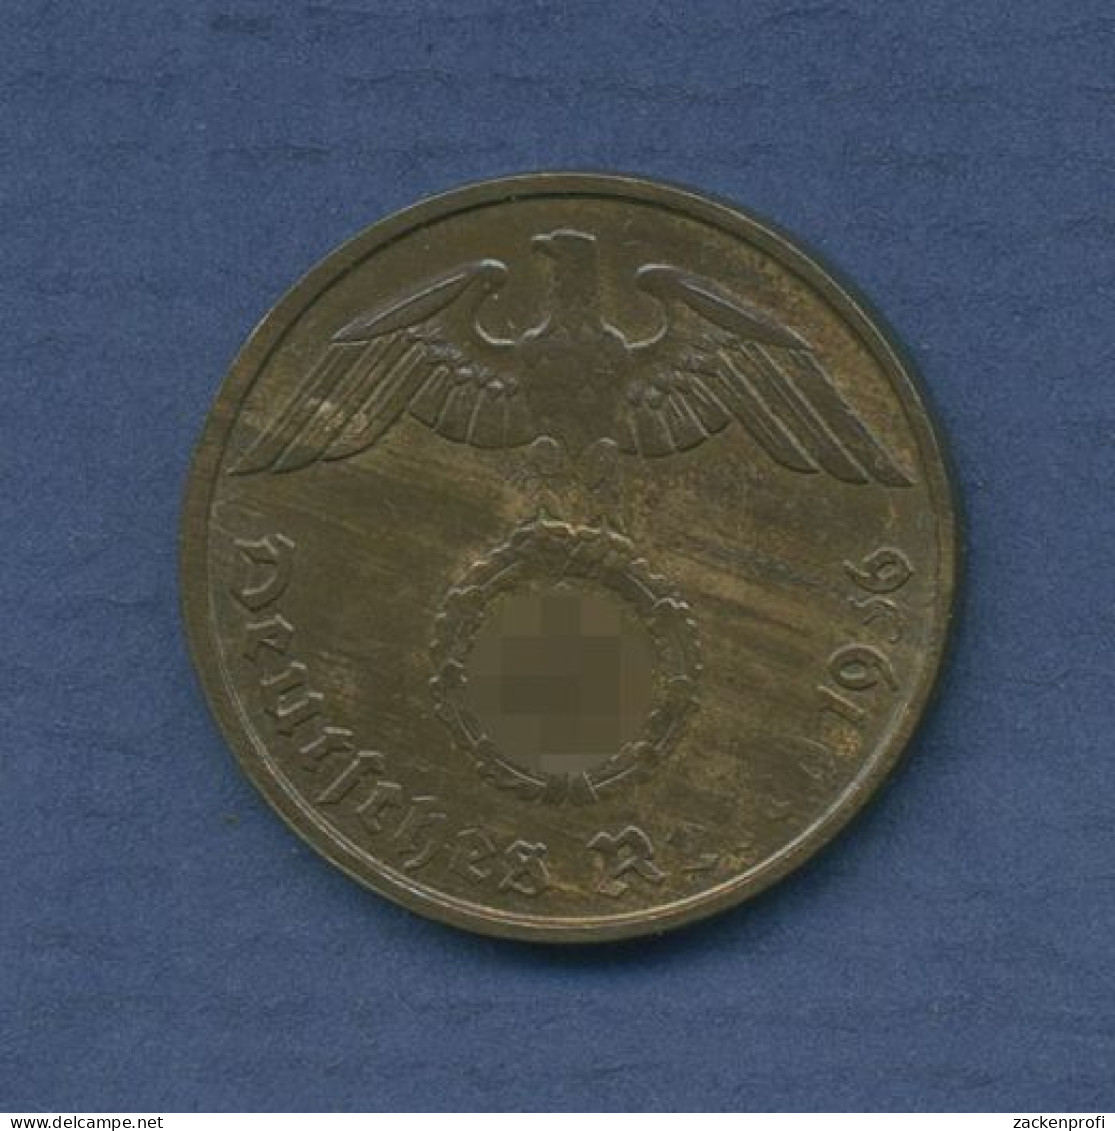 Deutsches Reich 2 Reichspfennig 1936 D, J 362 Vz+ (m3656) - 2 Reichspfennig